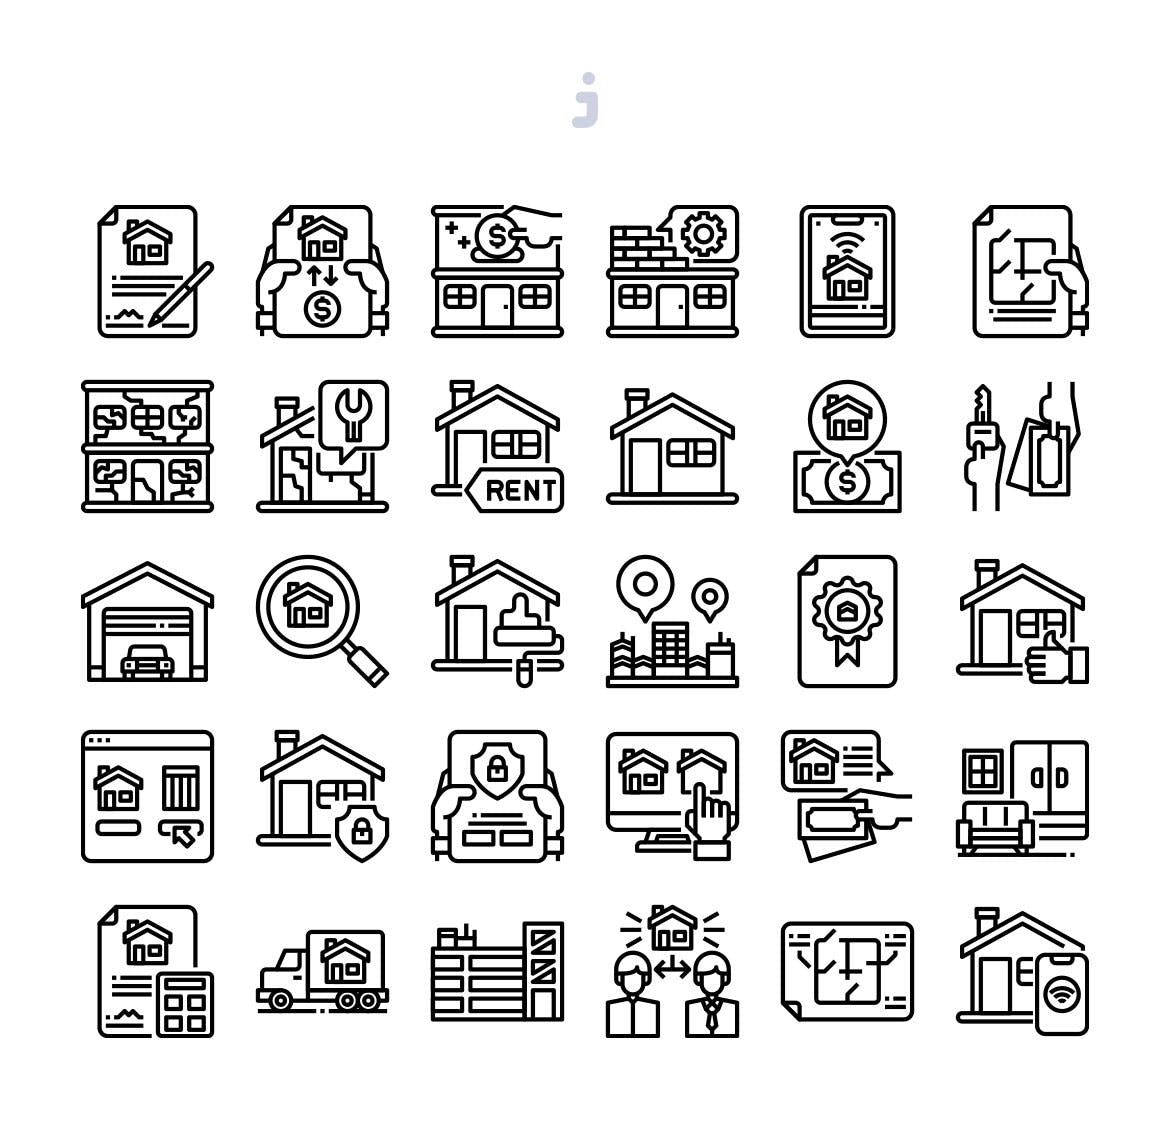 30个房地产主题矢量图标 30 Real Estate Icons插图(2)